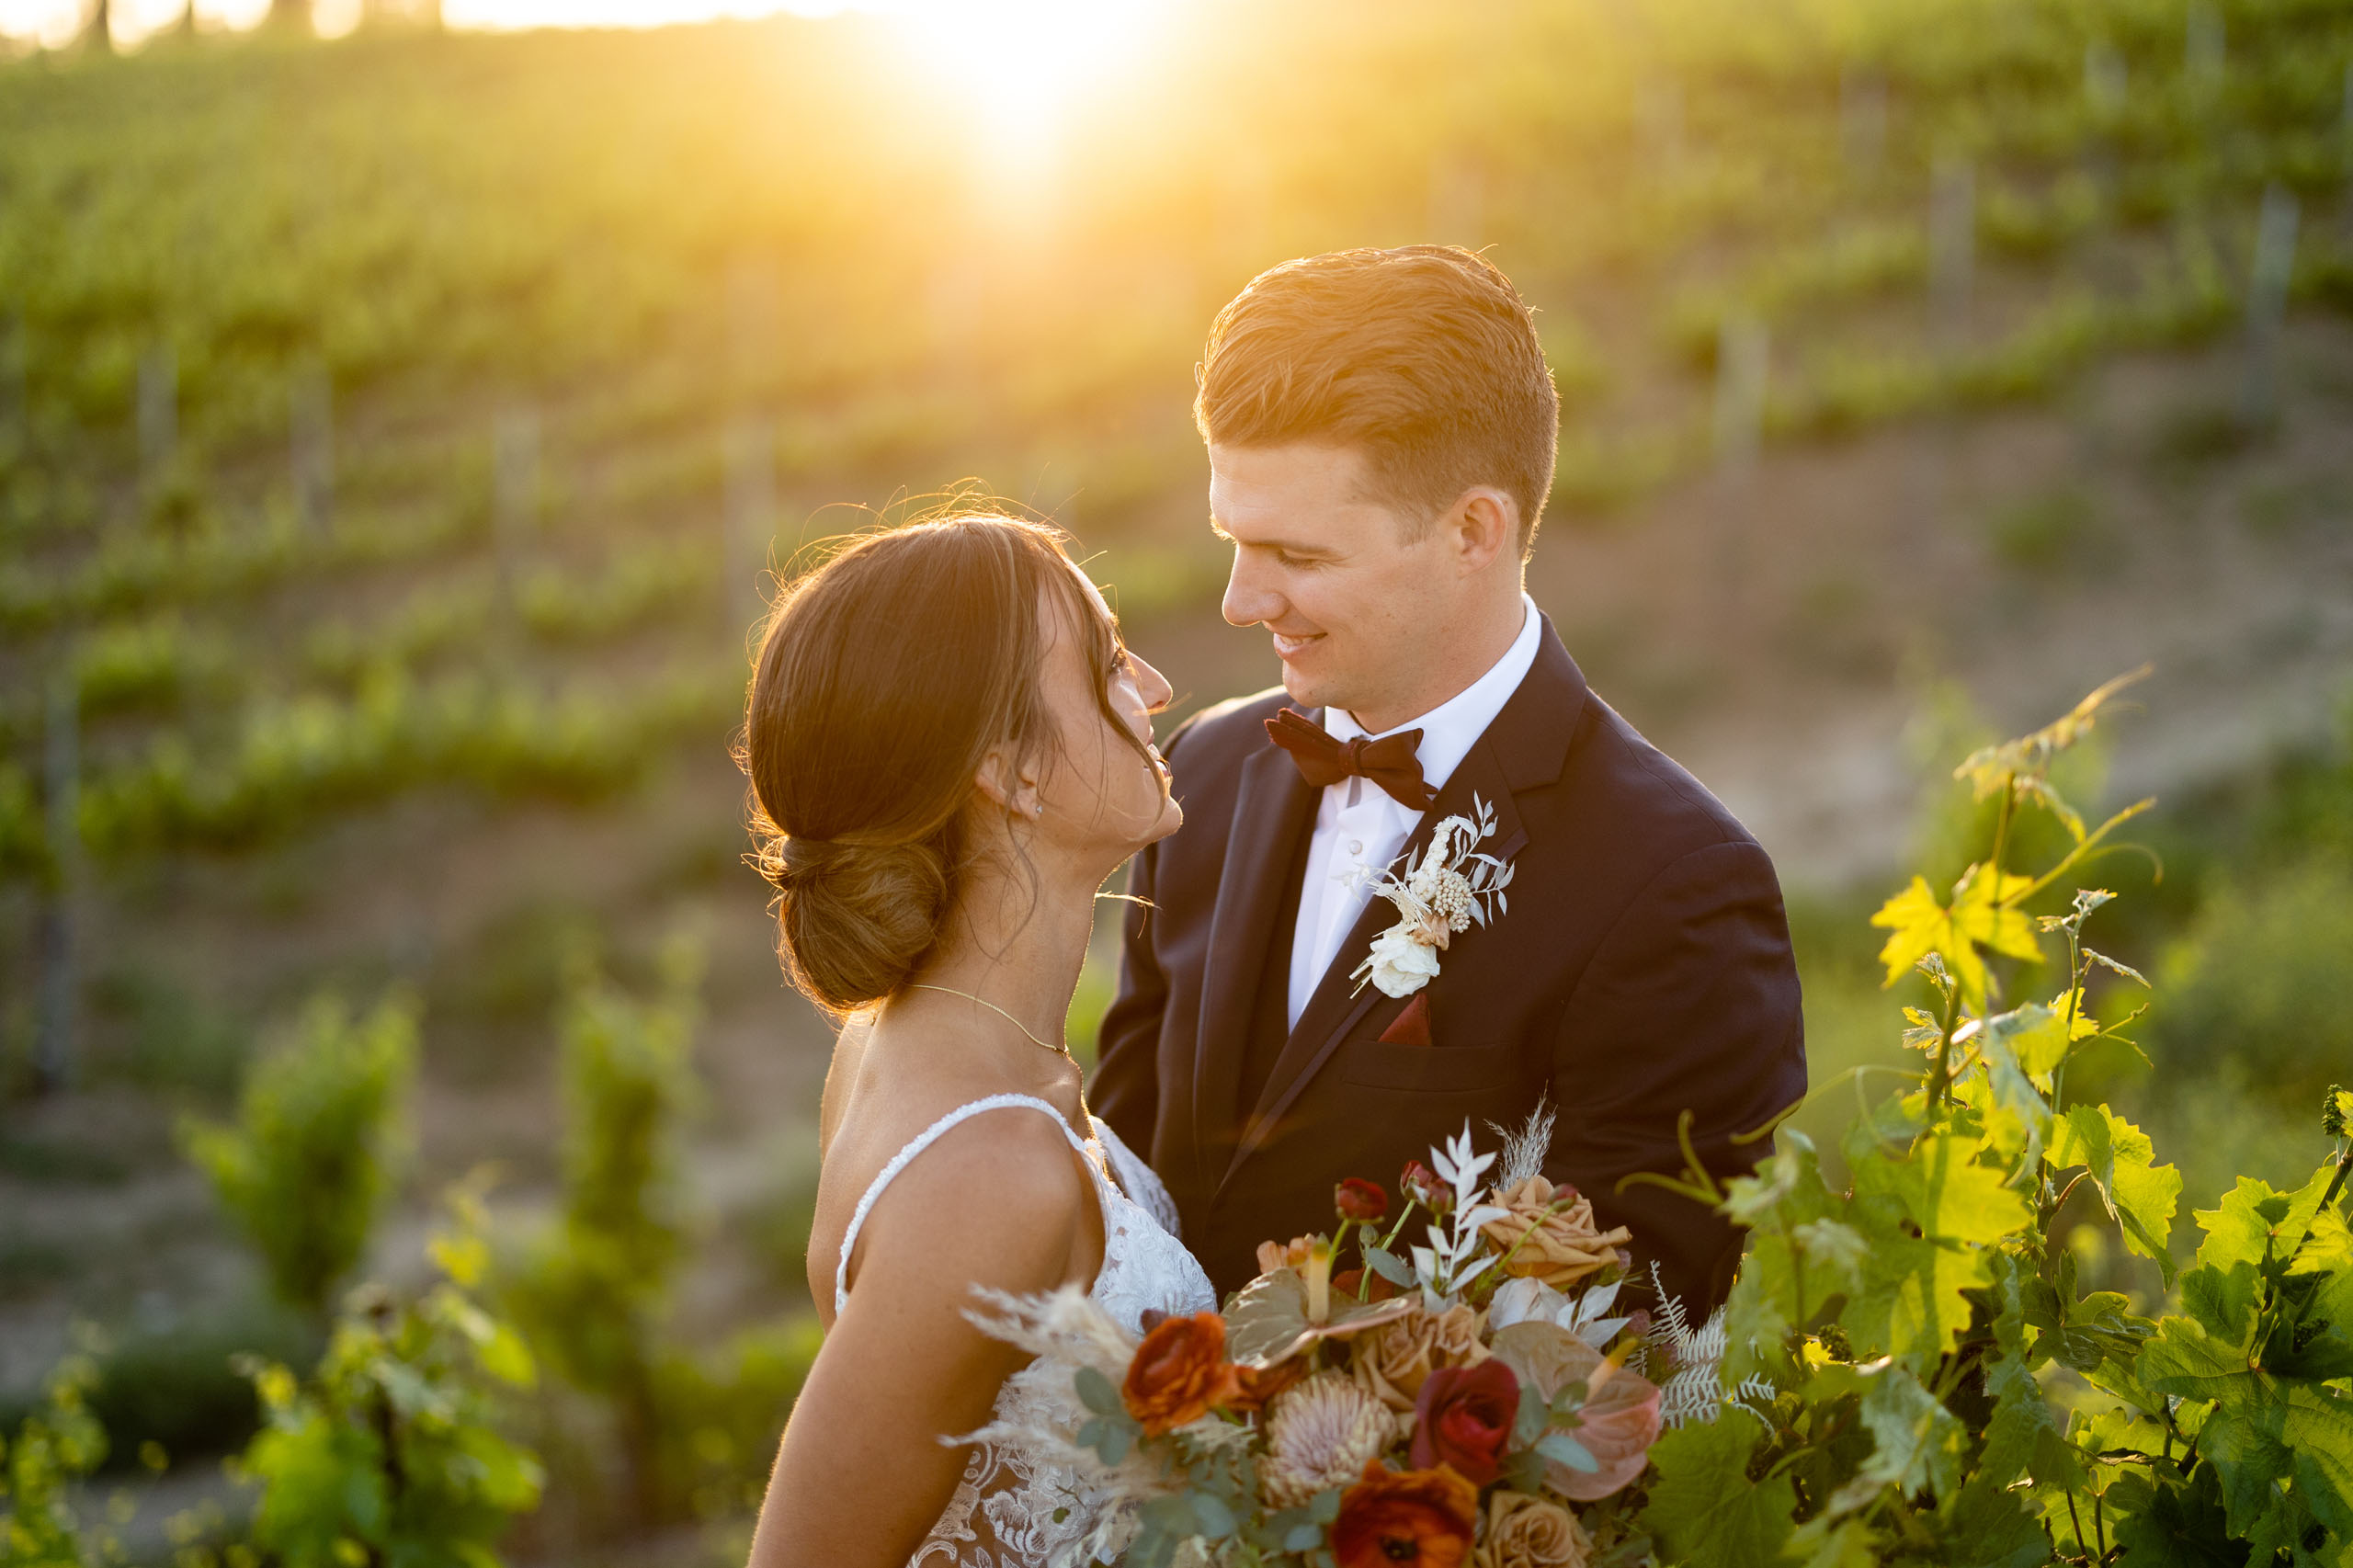 bride and groom in the vineyard